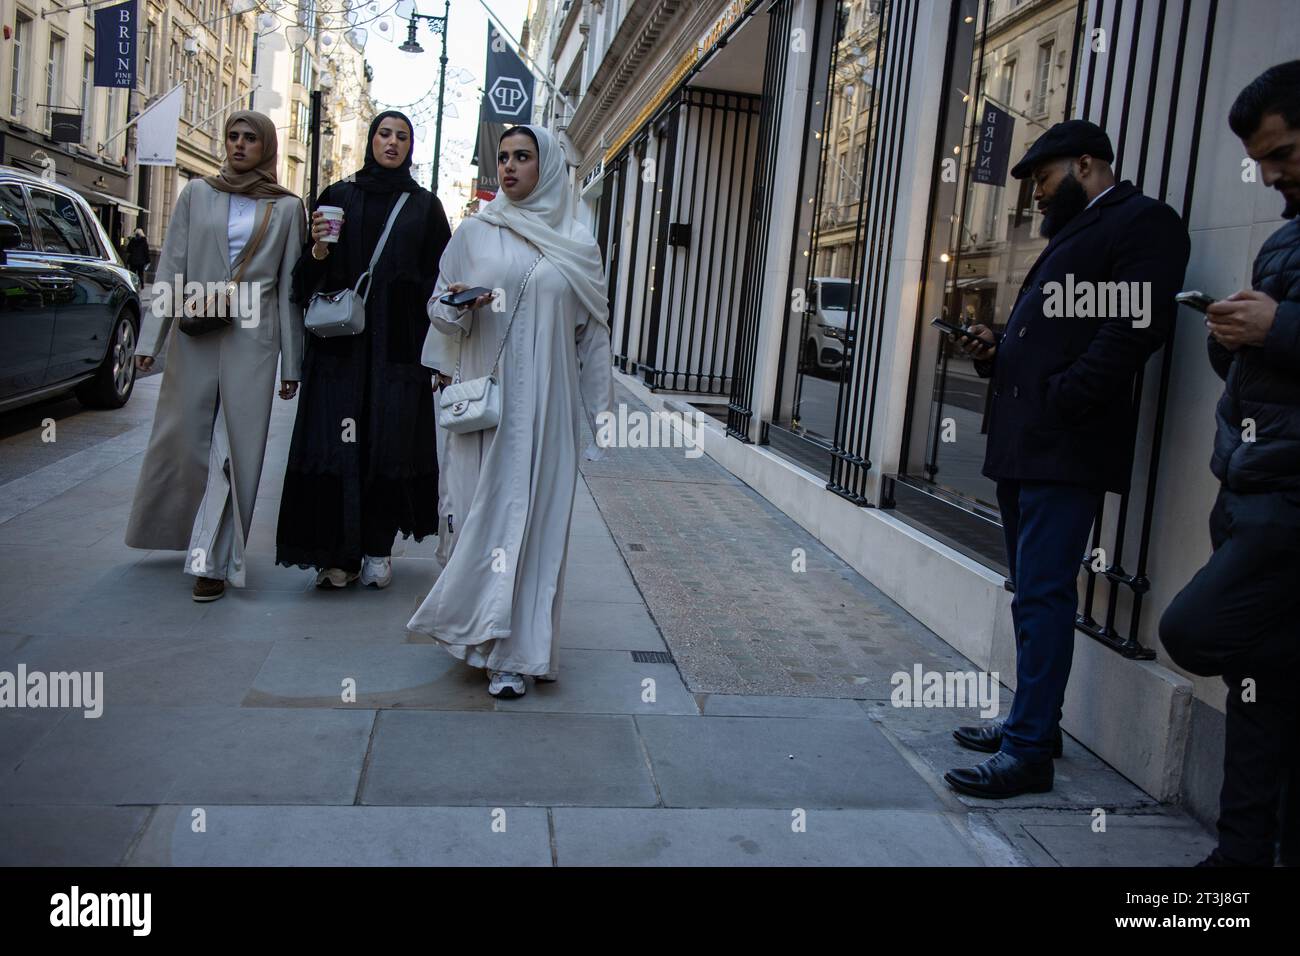 Donna del Medio Oriente che indossa abayas nere per fare shopping a New Bond Street, i marchi di lusso di Mayfair High Street, Londra, Inghilterra, Regno Unito Foto Stock